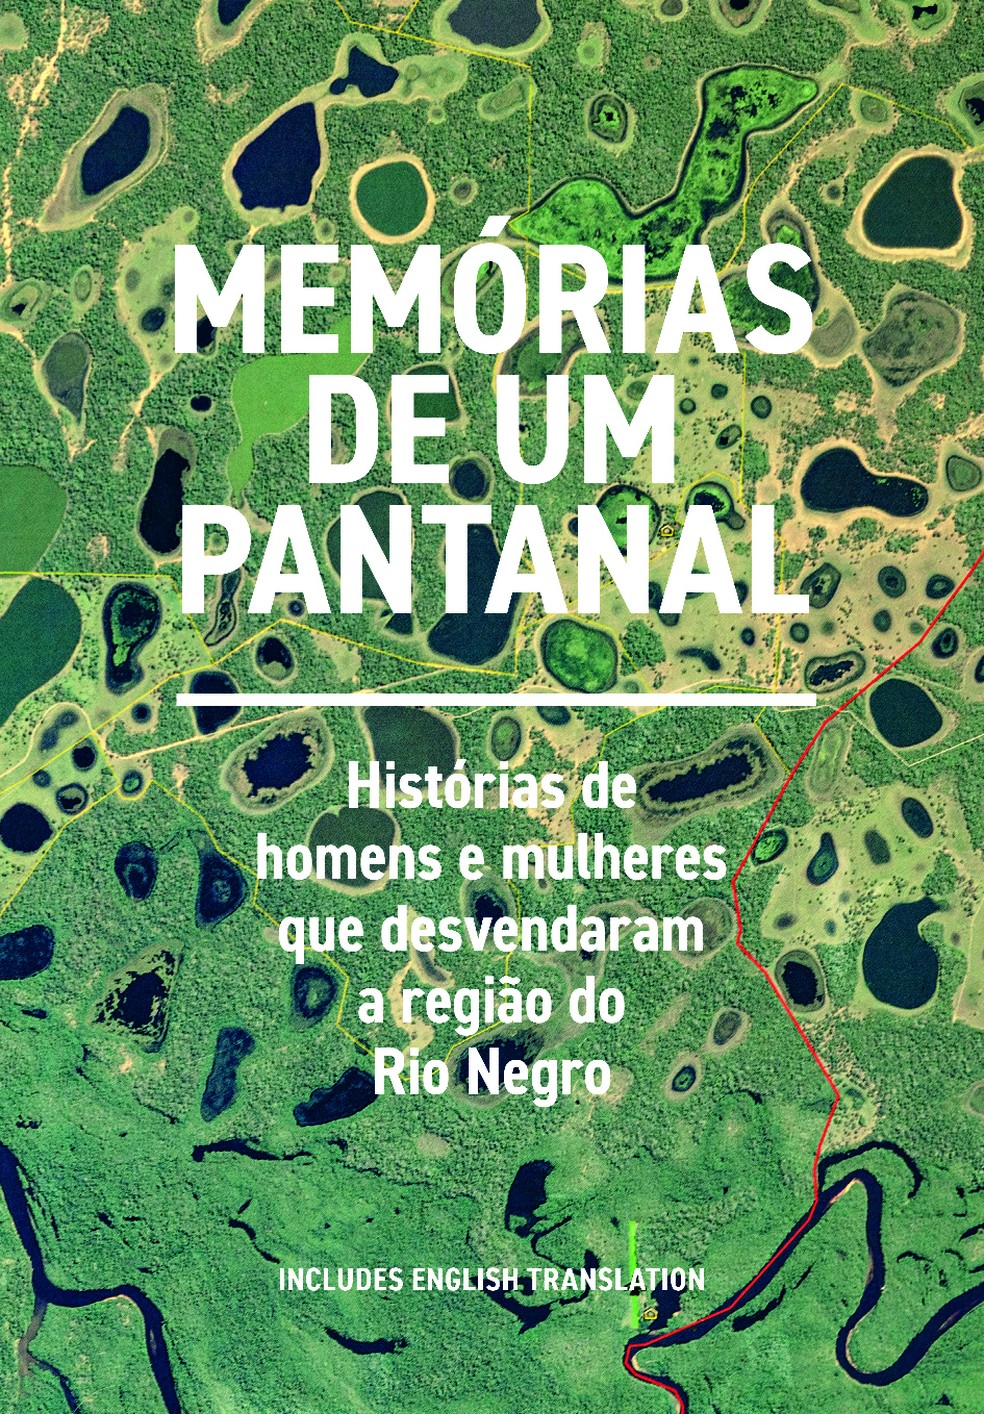 Memórias de um Pantanal: Histórias de homens e mulheres que desvendaram a região do rio Negro, de Teté Martinho — Foto: Divulgação